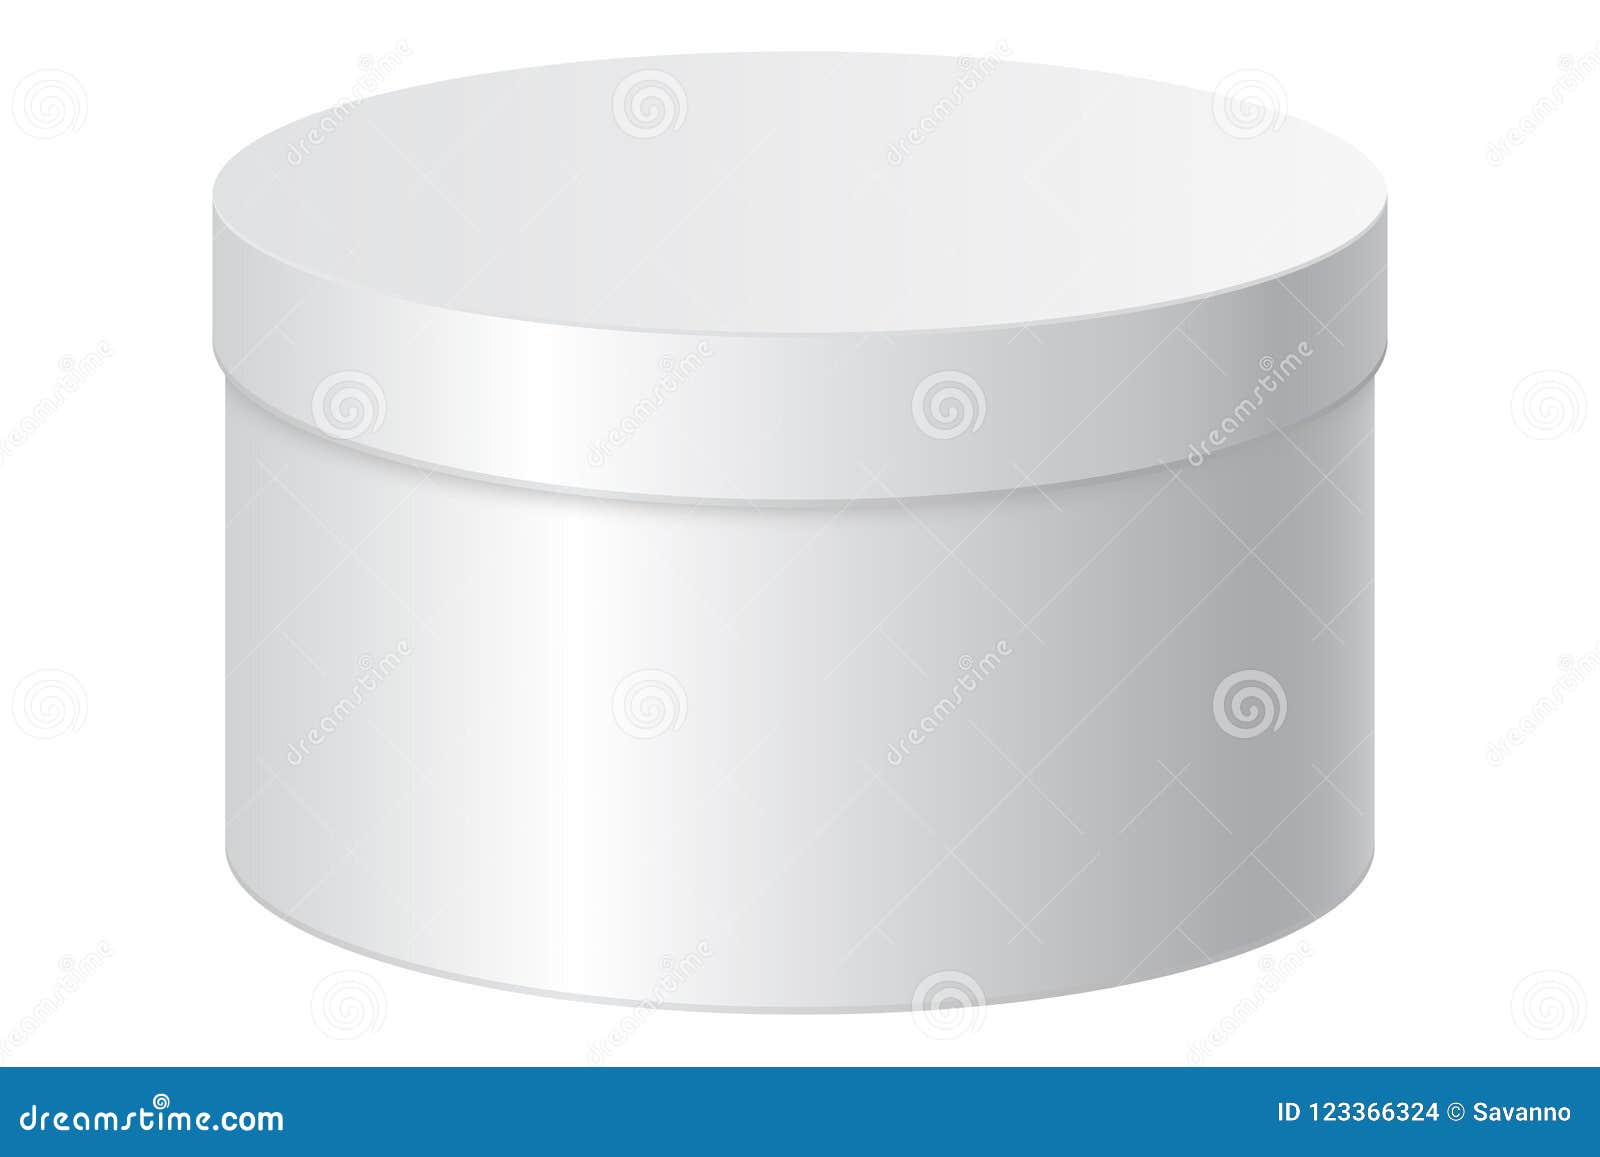 Circle box. Круглая белая коробка с крышкой. Круглая коробка вектор. Коробка круглая пустая. Коробка круглая 25х10.